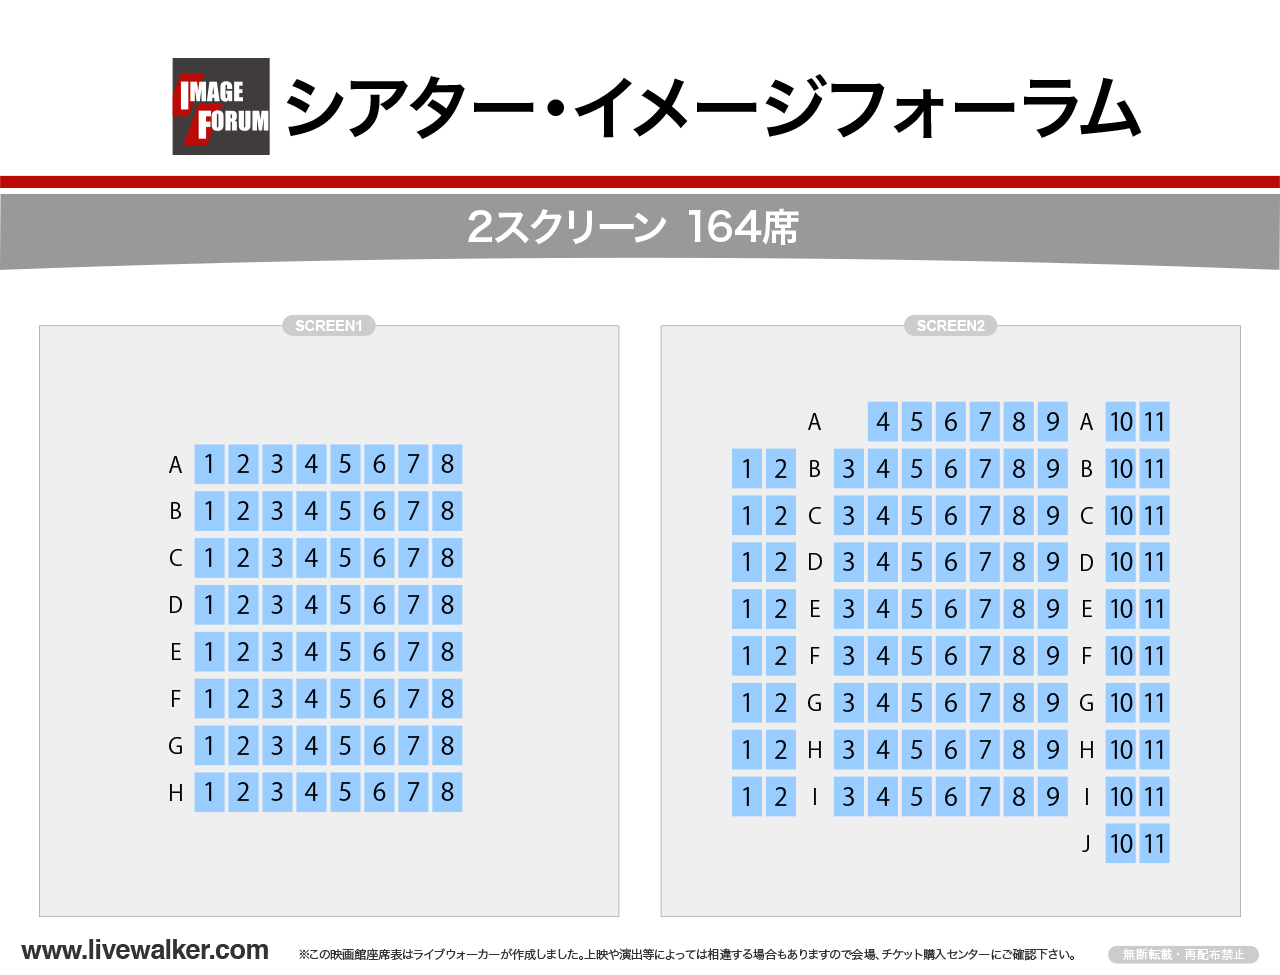 渋谷シアター・イメージフォーラムシアターの座席表